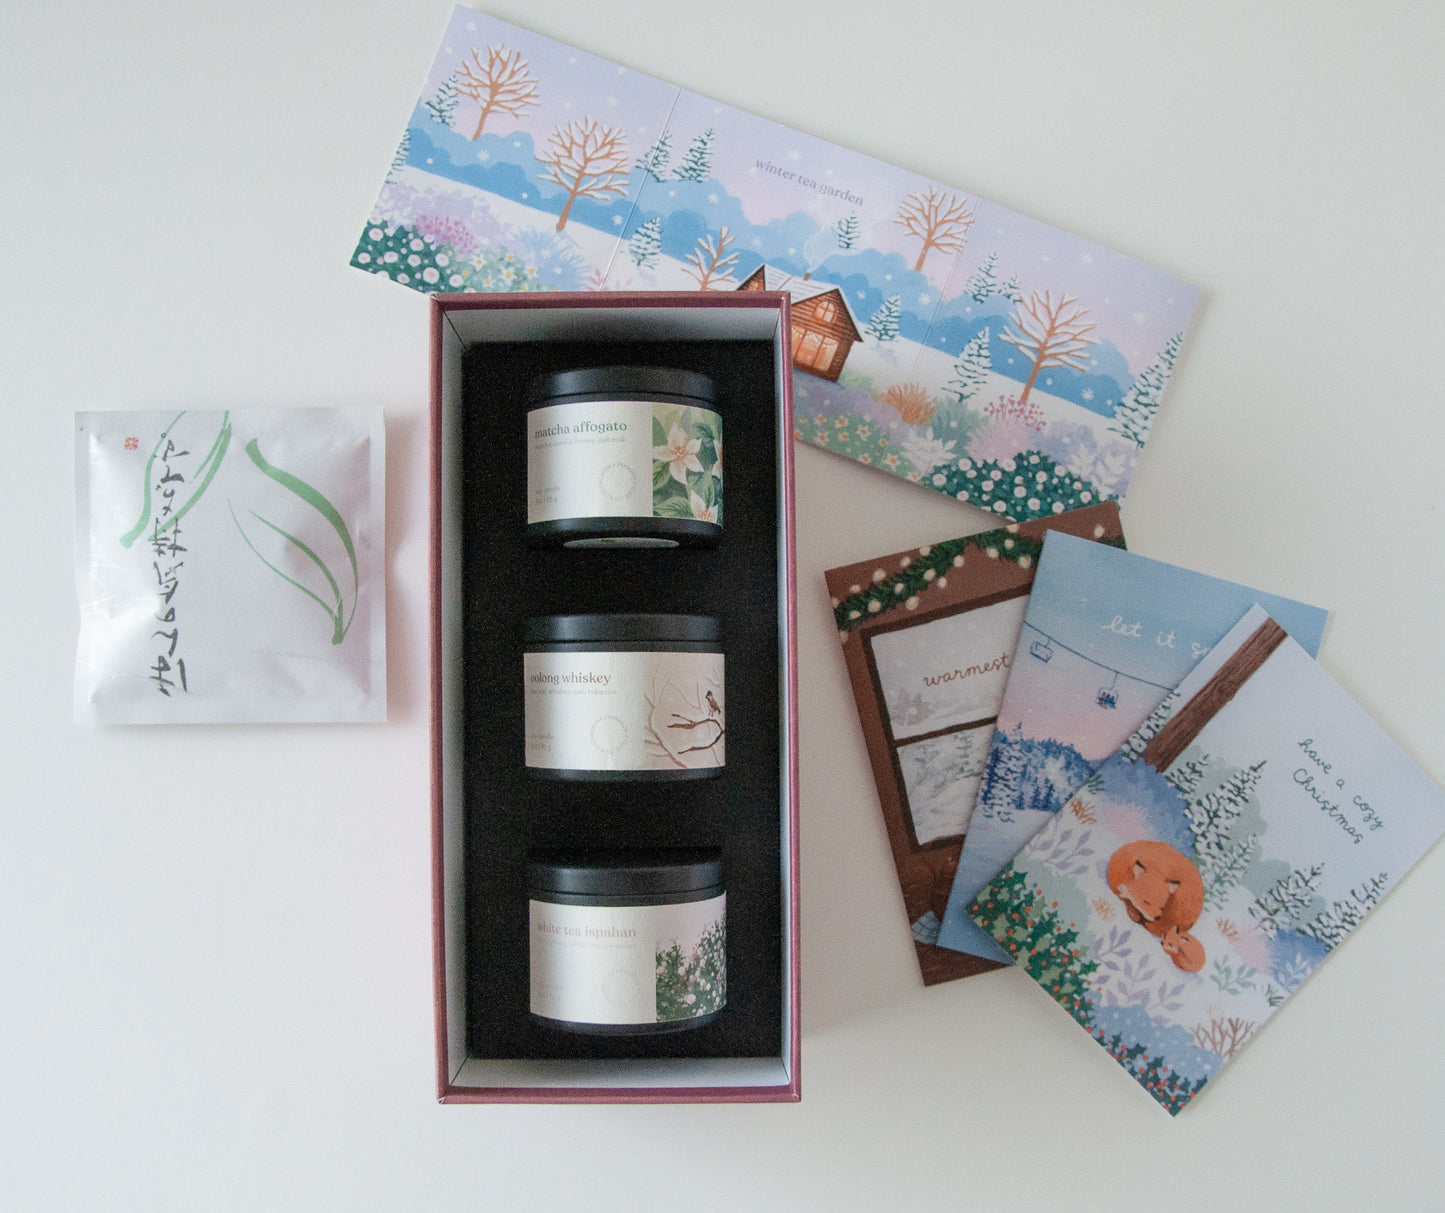 Winter Tea Garden (Candle Gift Set)